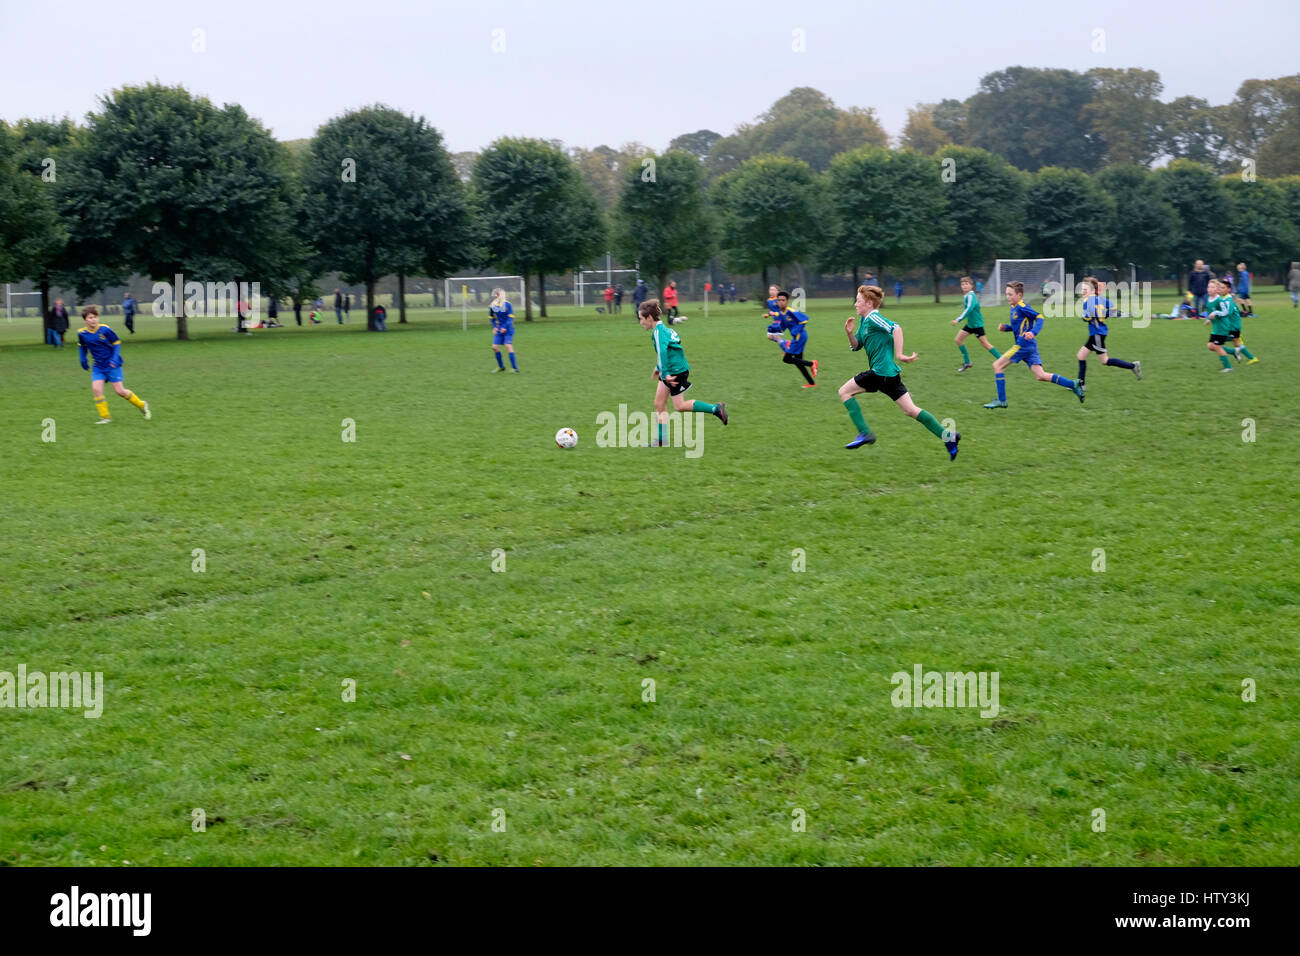 Garçons enfants en train de jouer équipe junior football ballon dans un parc samedi matin Royaume-Uni Grande-Bretagne KATHY DEWITT Banque D'Images